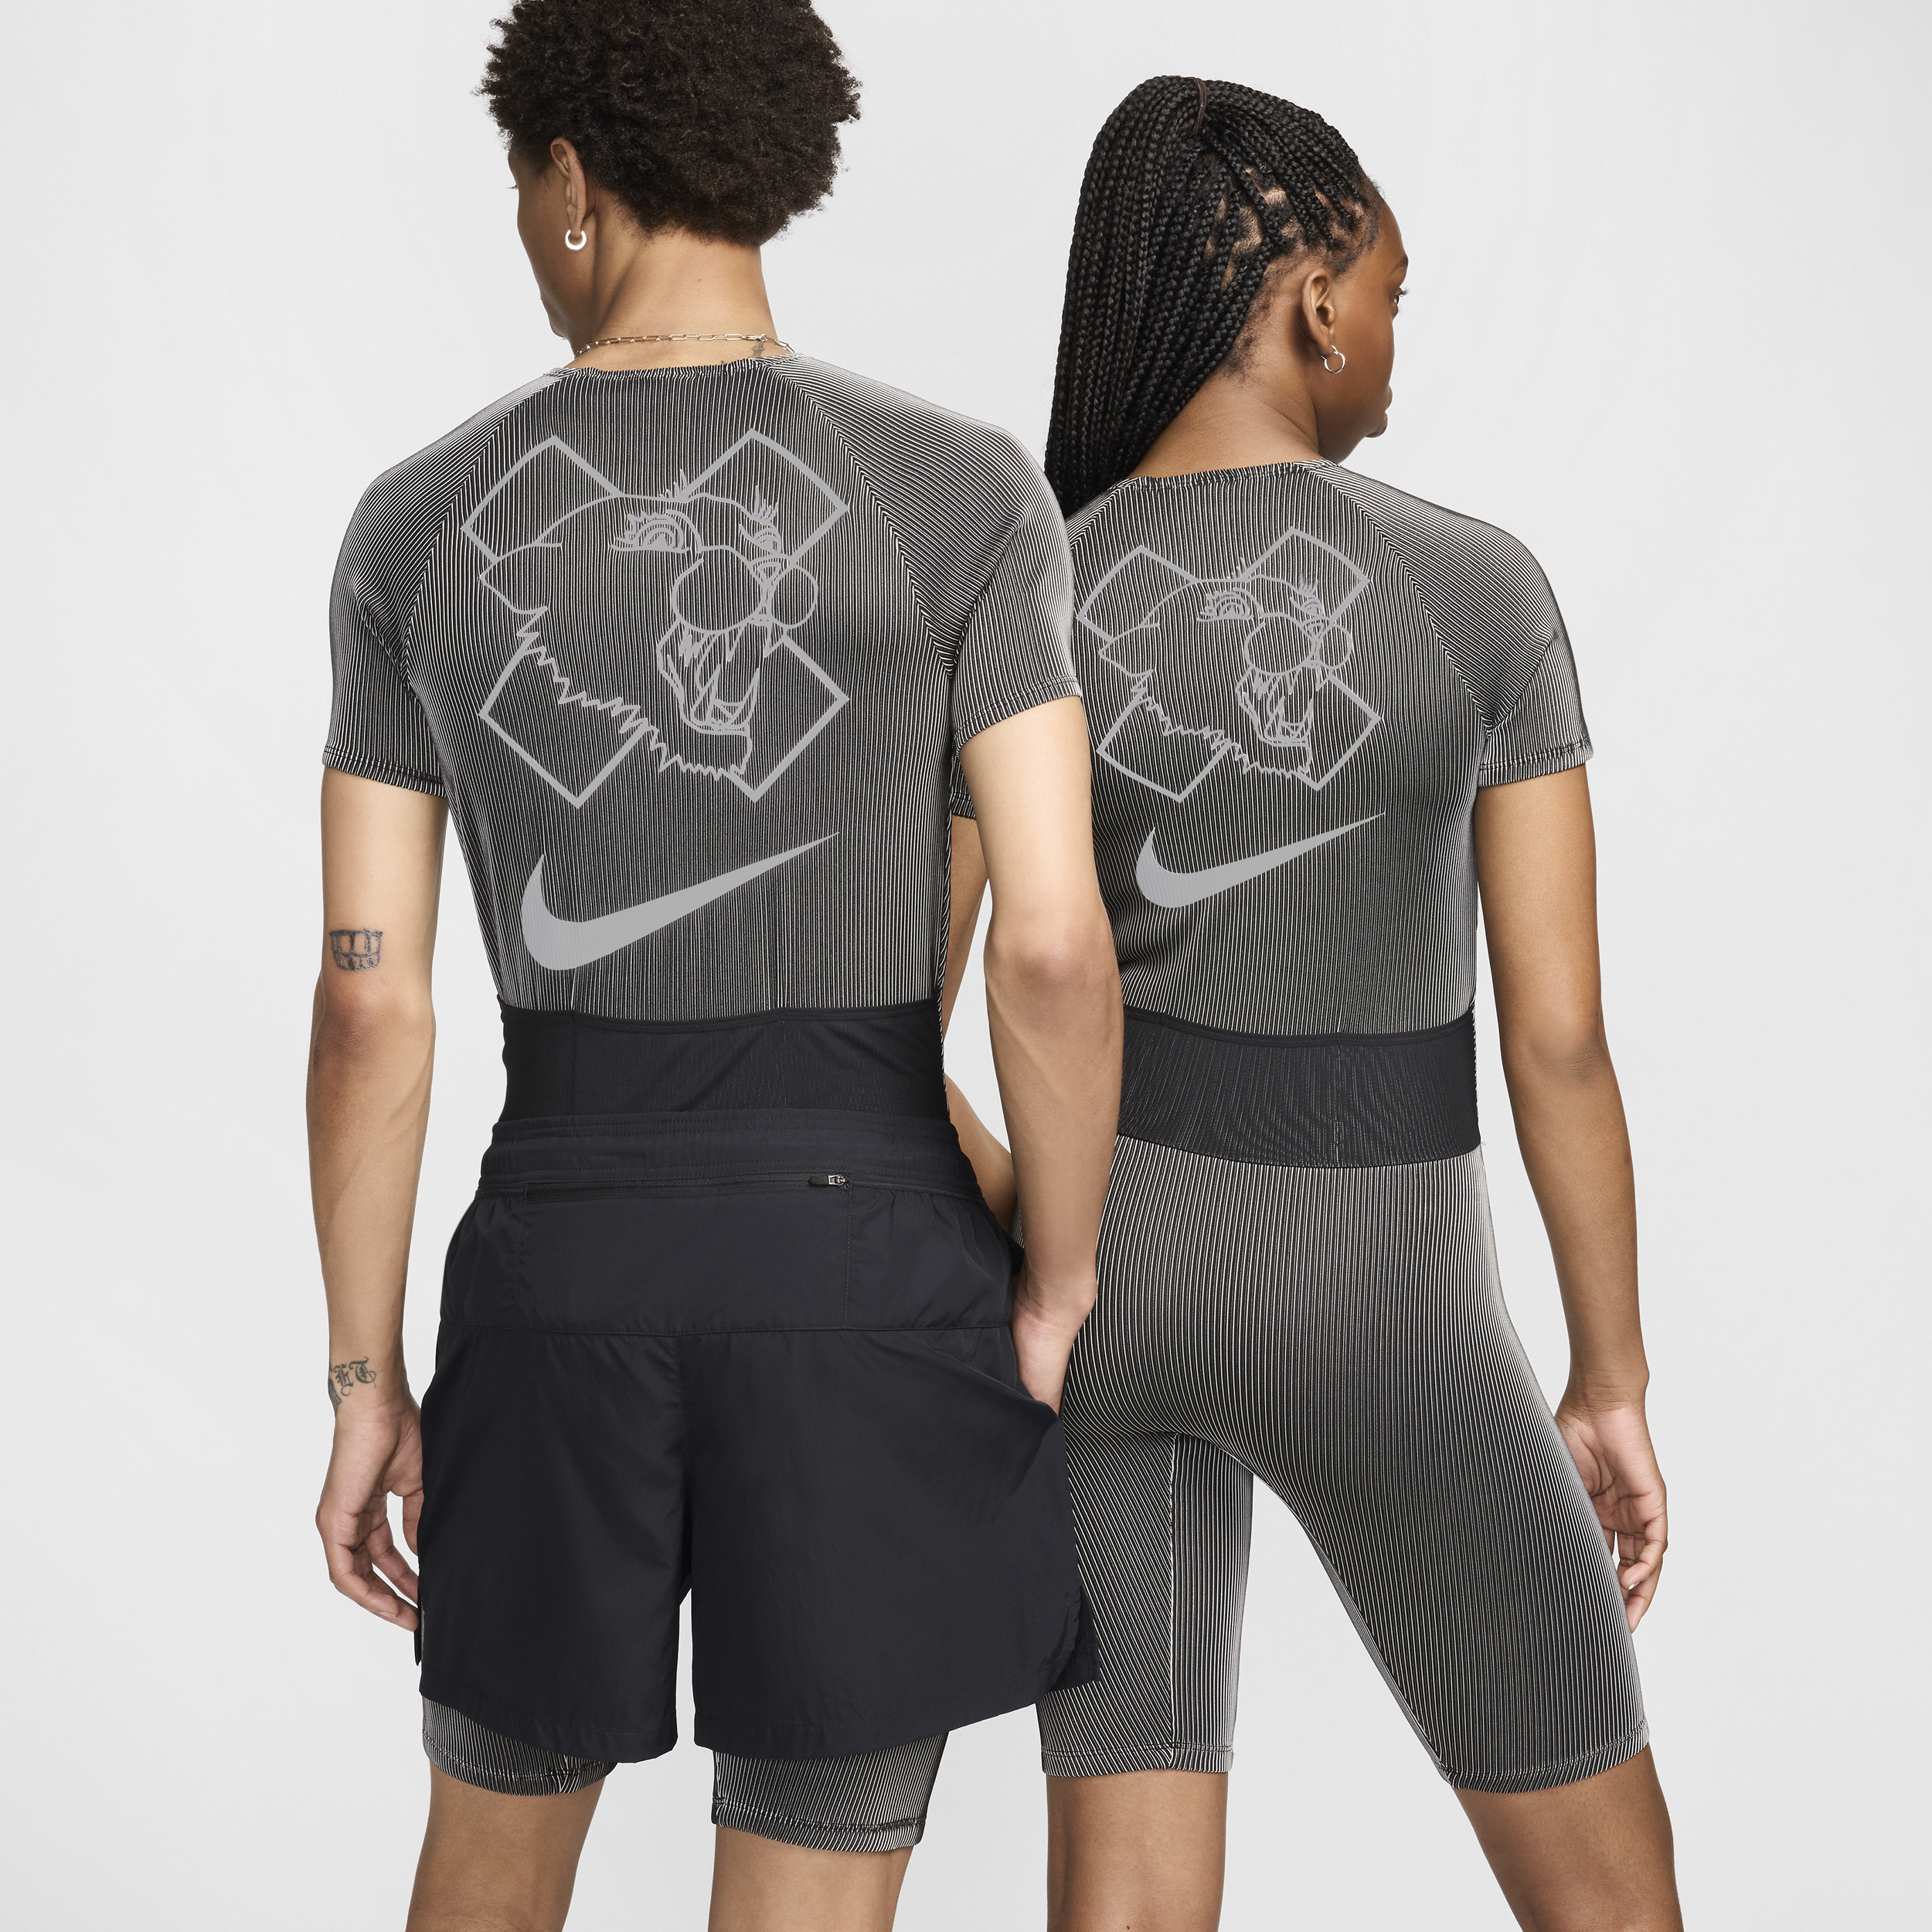 Nike x Patta Running Team wedstrijdtenue Zwart